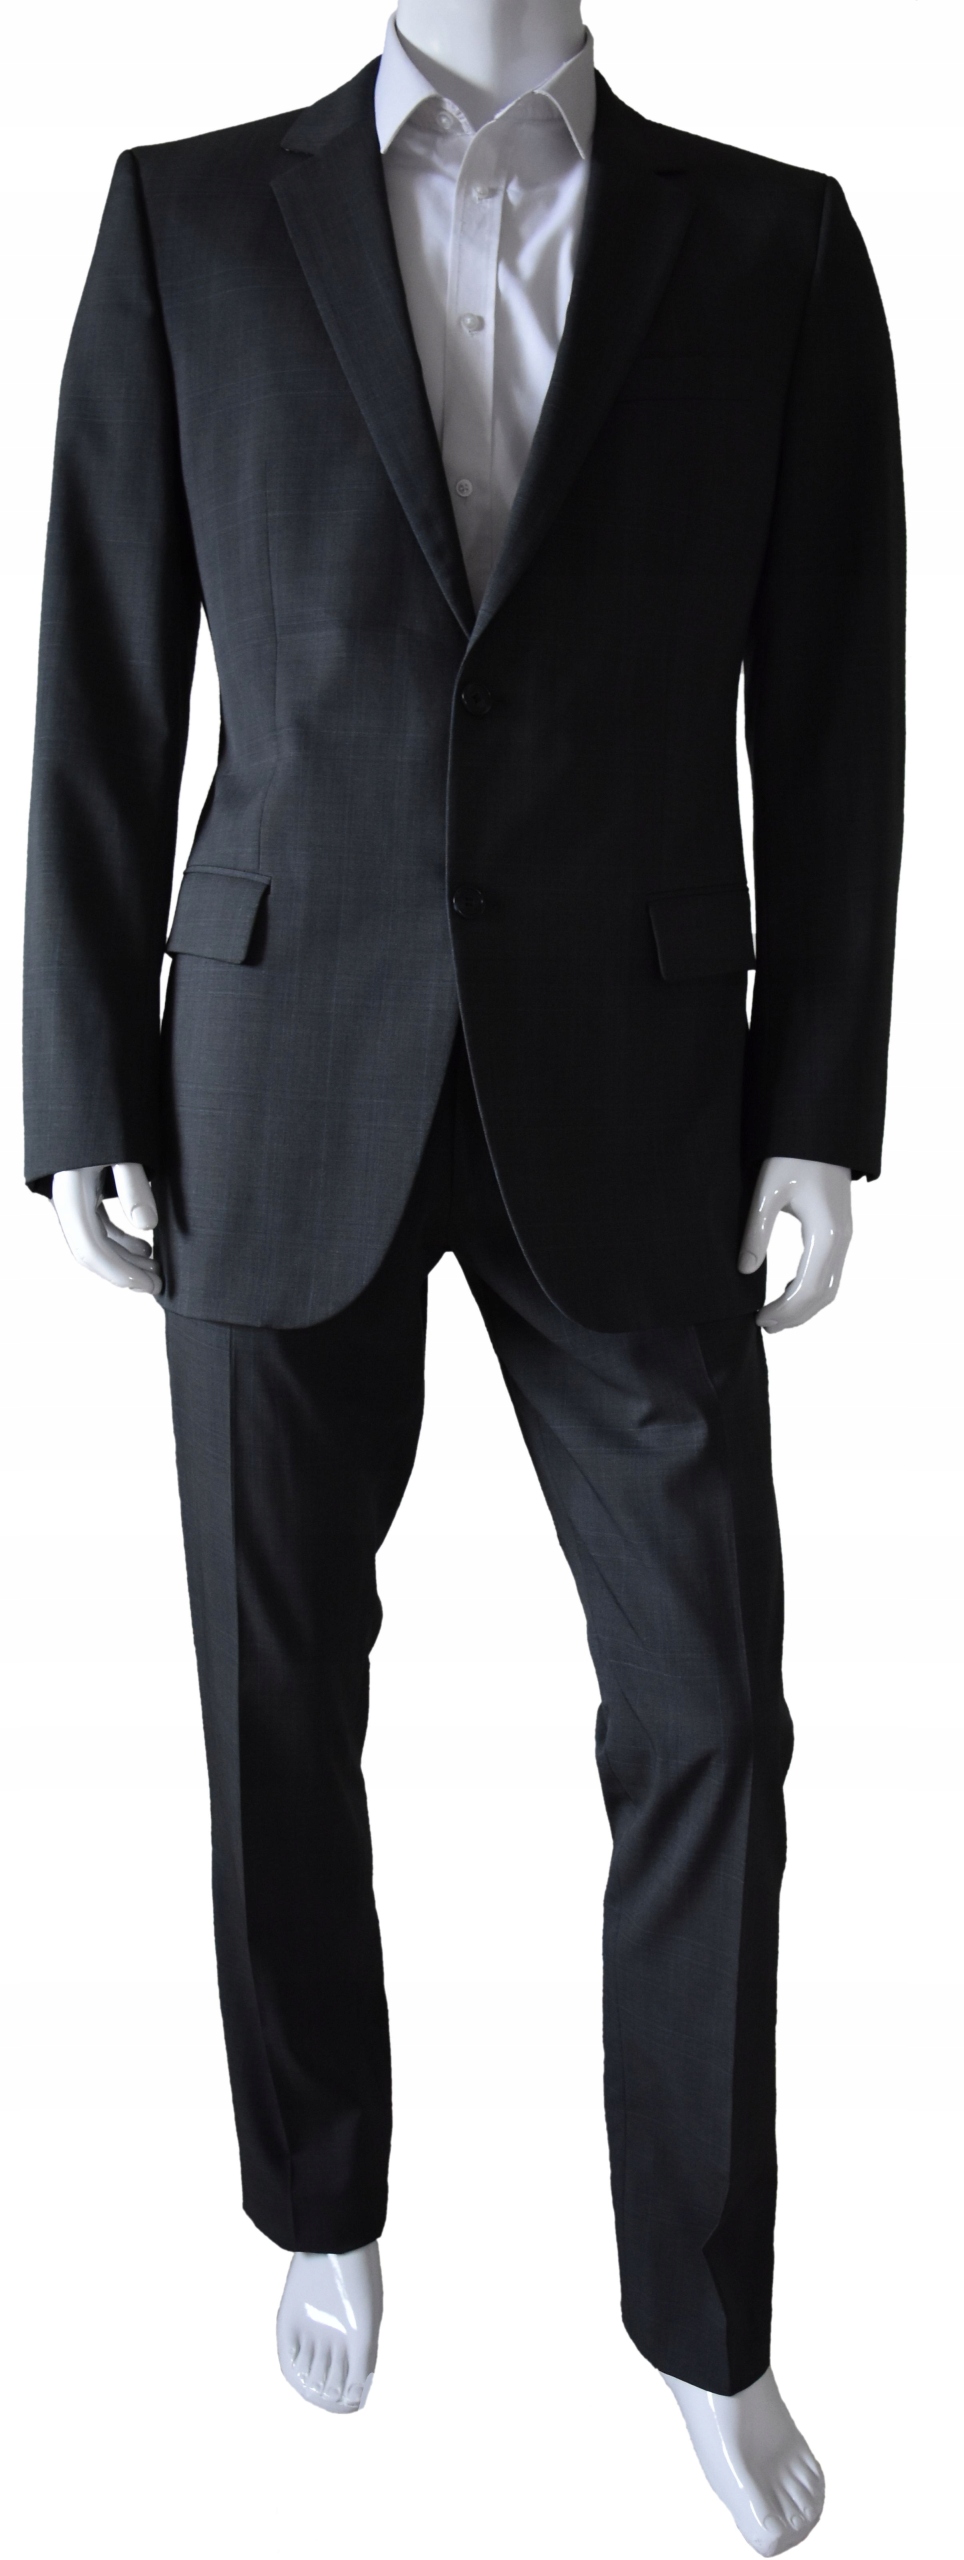 Hugo Boss костюм мужской серый синий кратр 52